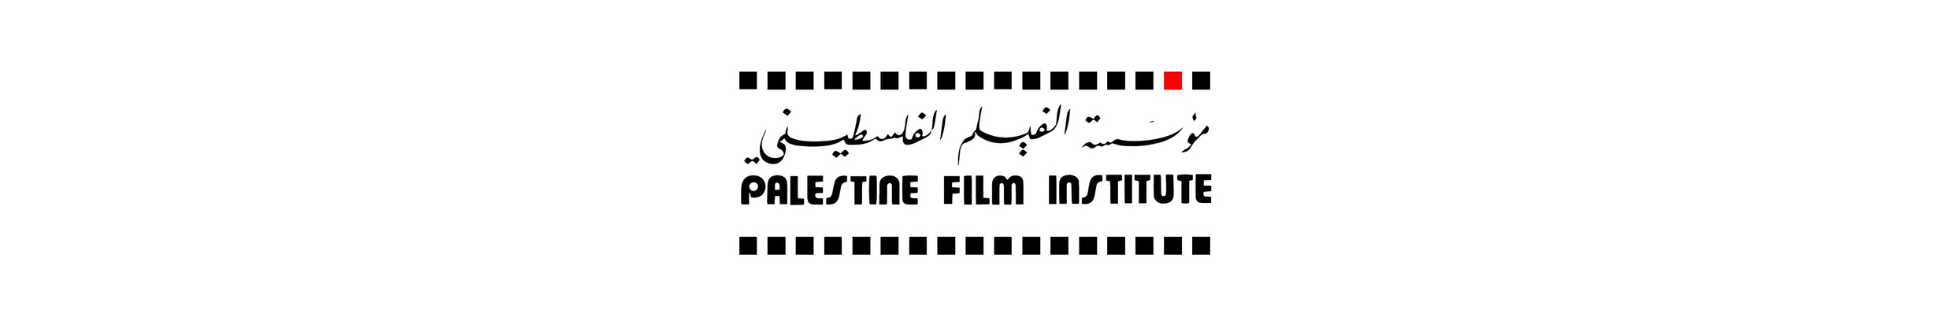 Palestine Film Institute logo 